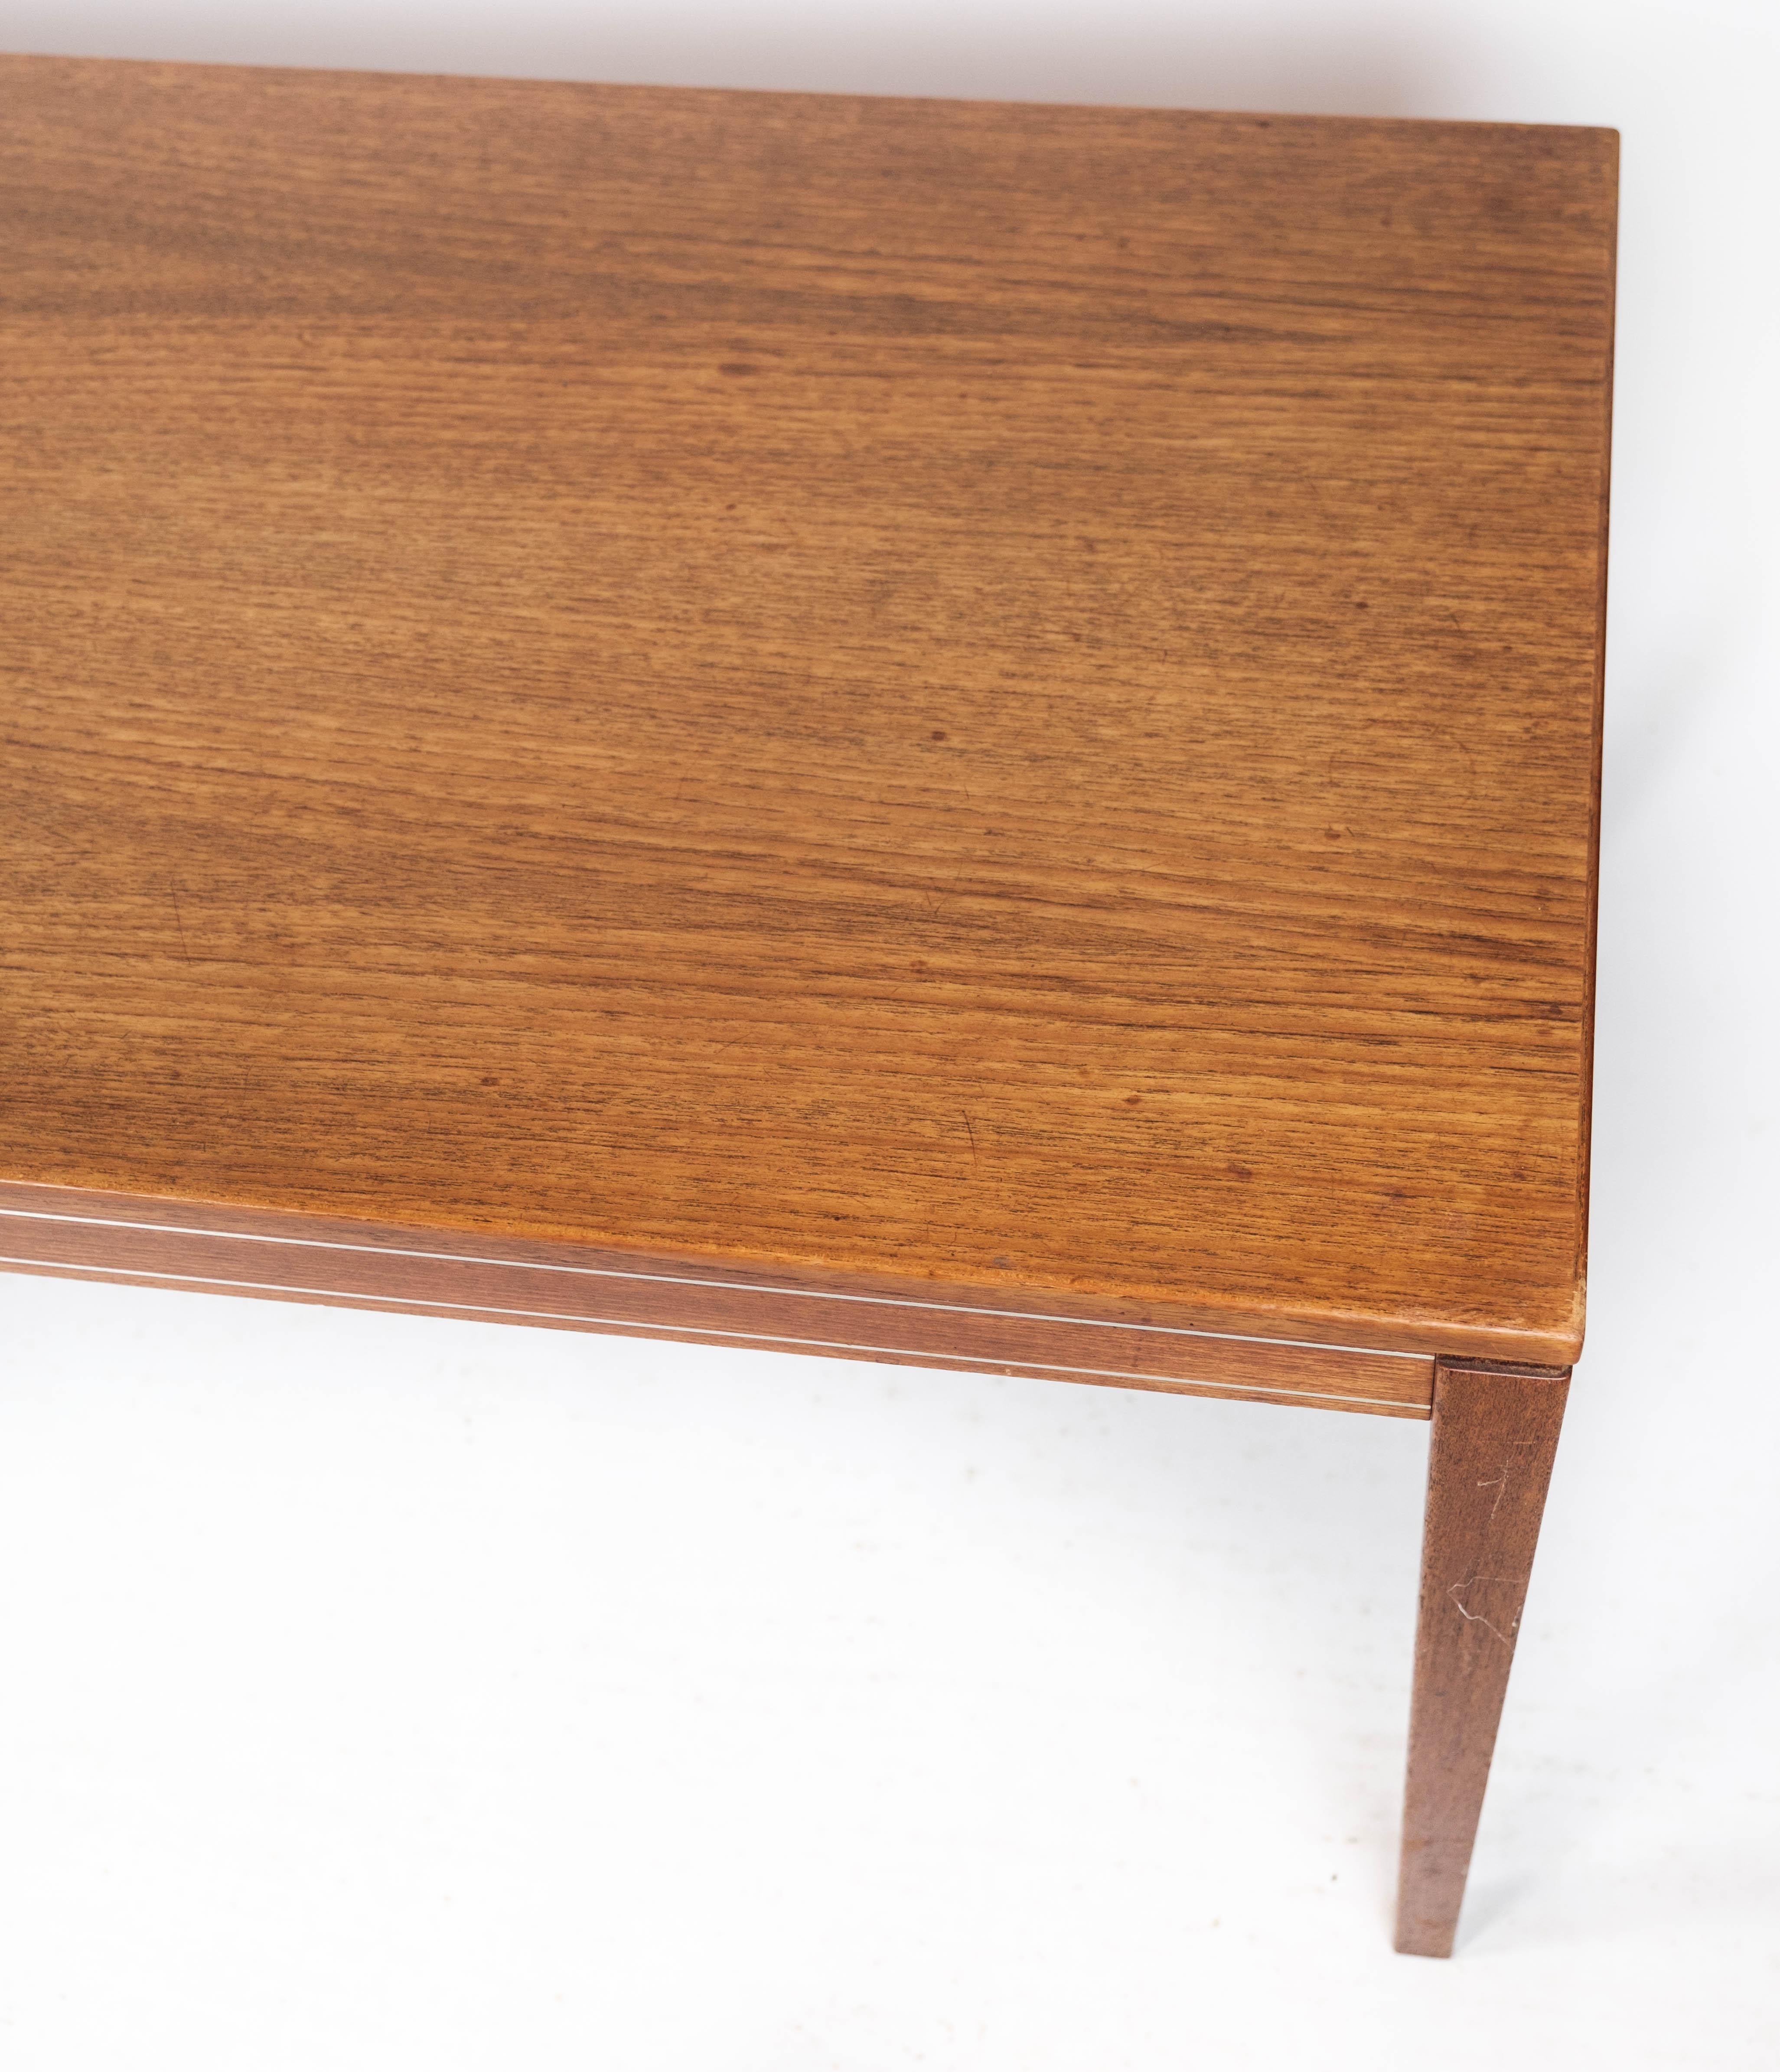 Der aus Palisanderholz gefertigte Couchtisch mit dänischem Design aus den 1960er Jahren verkörpert die Eleganz und Raffinesse moderner Möbel aus der Mitte des Jahrhunderts.

Dieser Tisch ist aus Palisanderholz gefertigt, das für seine satte Farbe